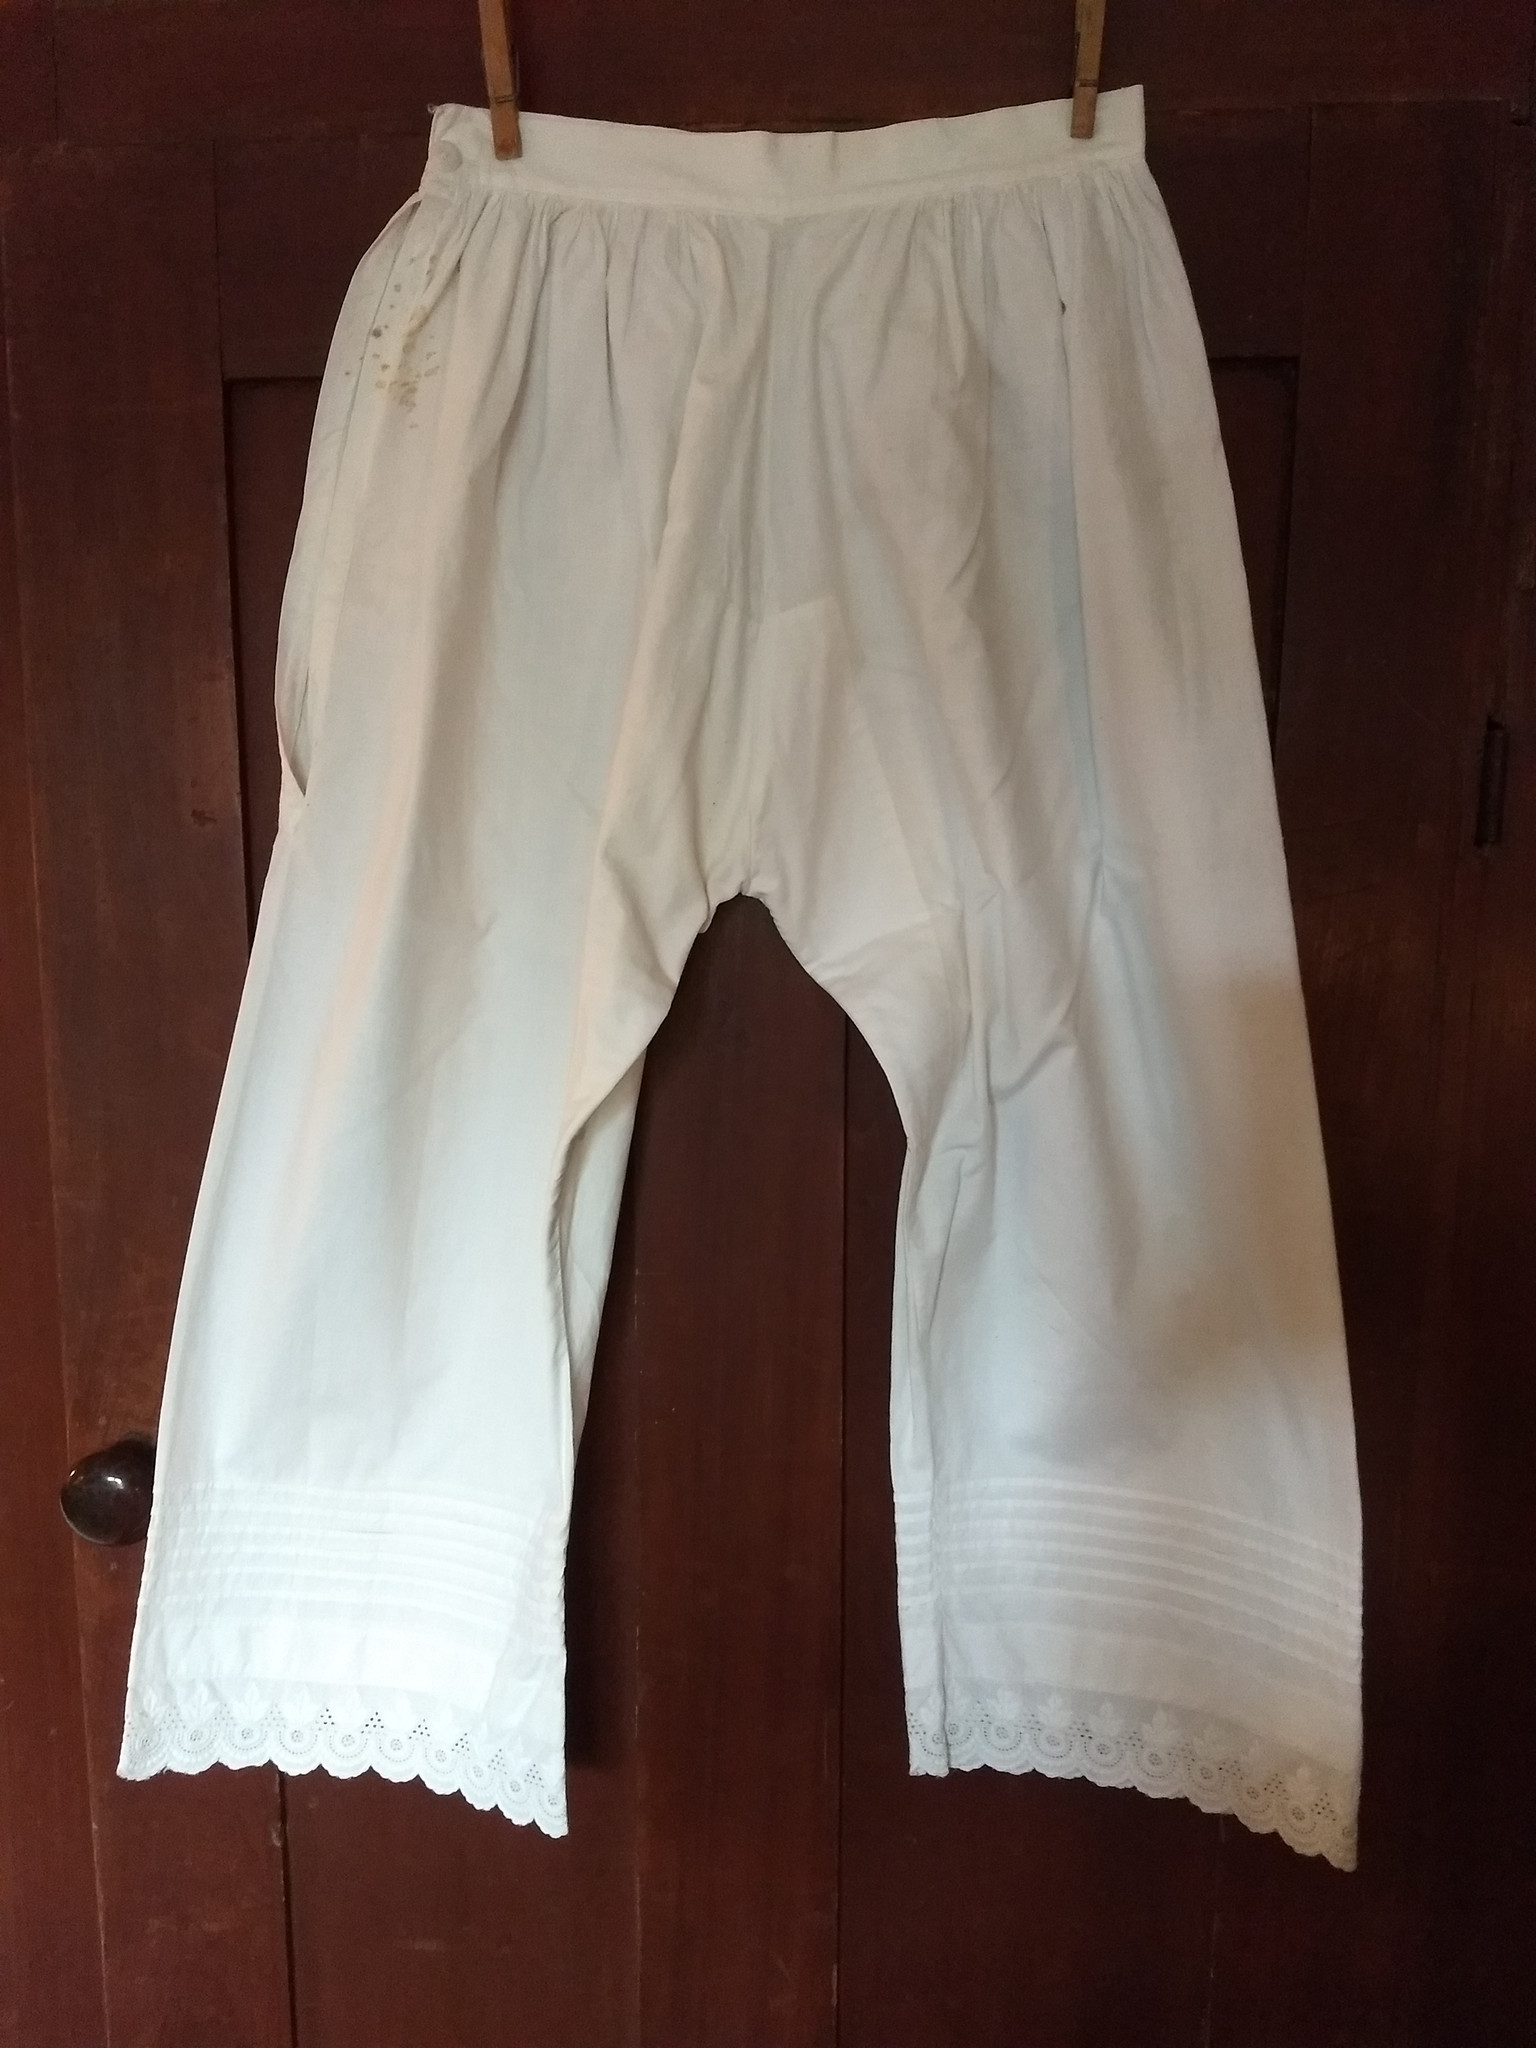 Victorian 1900s White Bloomers Pantaloons Underwear Tucks